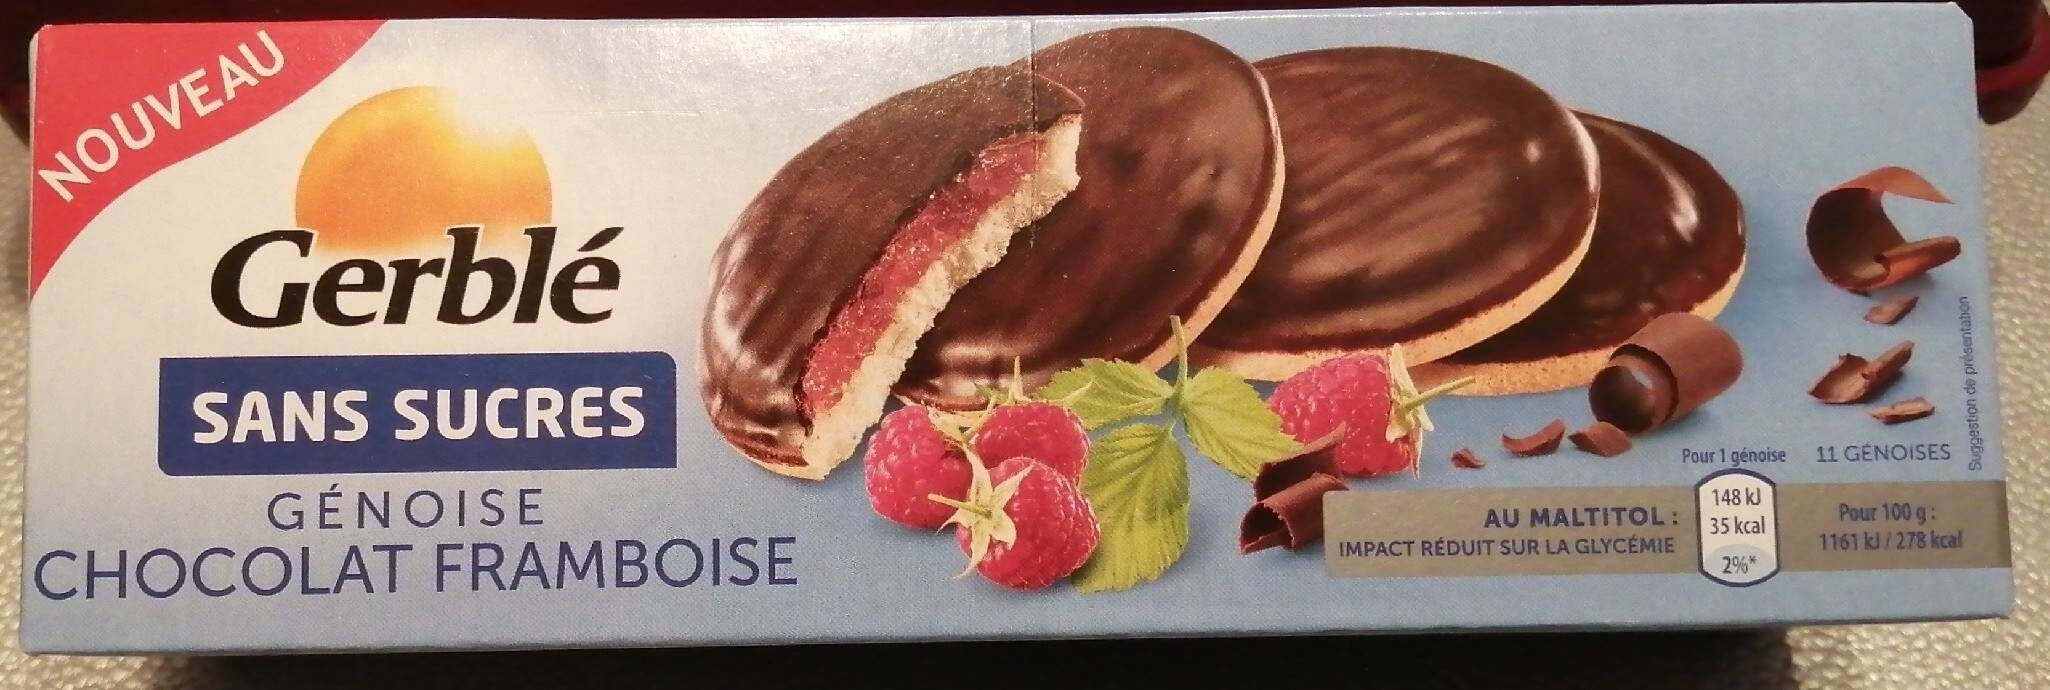 Gerblé sans sucres génoise chocolat framboise - Product - fr